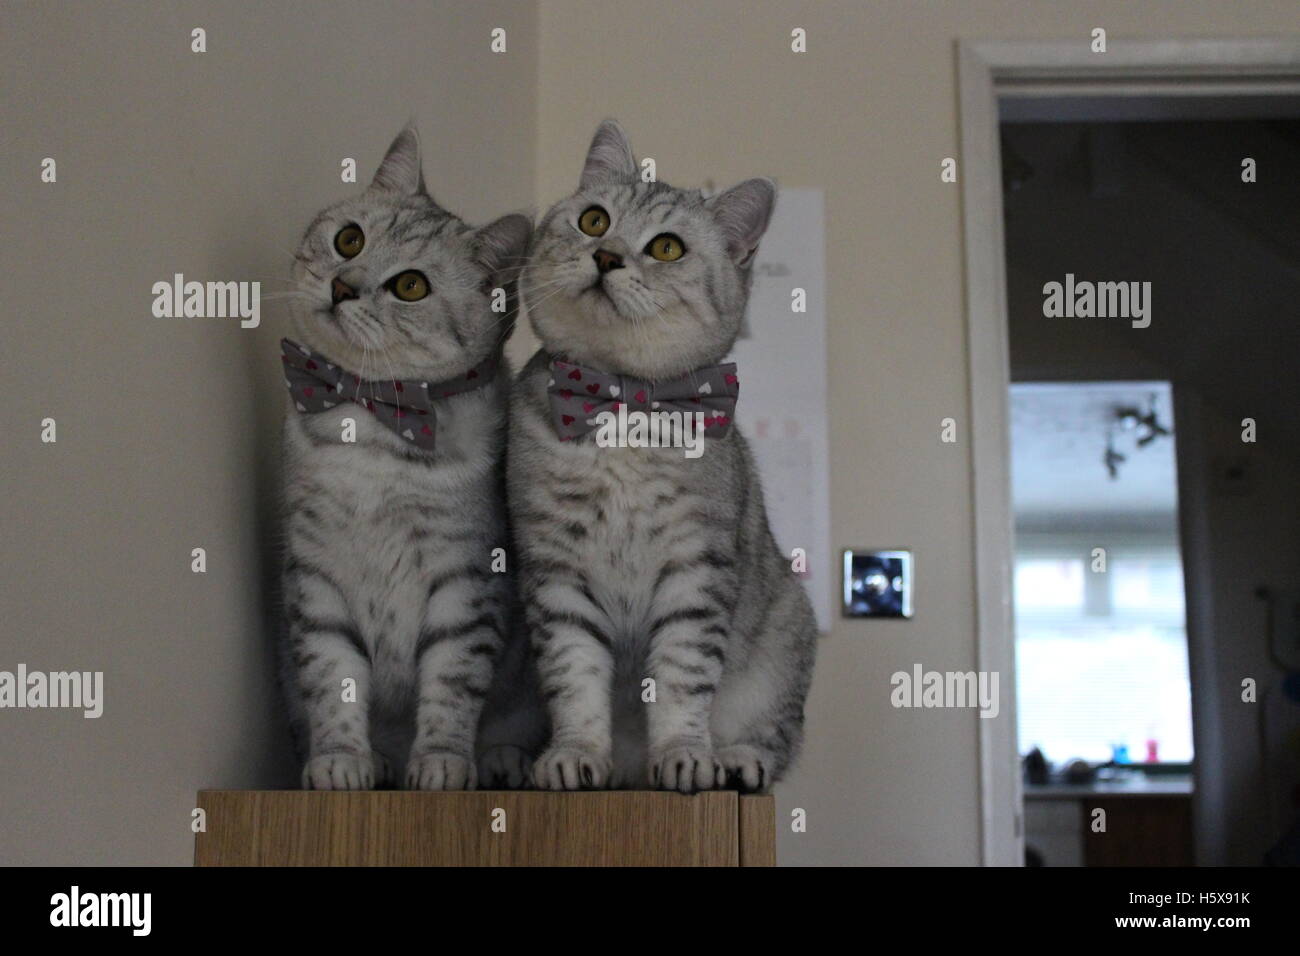 Dos British Shorthair gatos en lazos arco coincidente Foto de stock